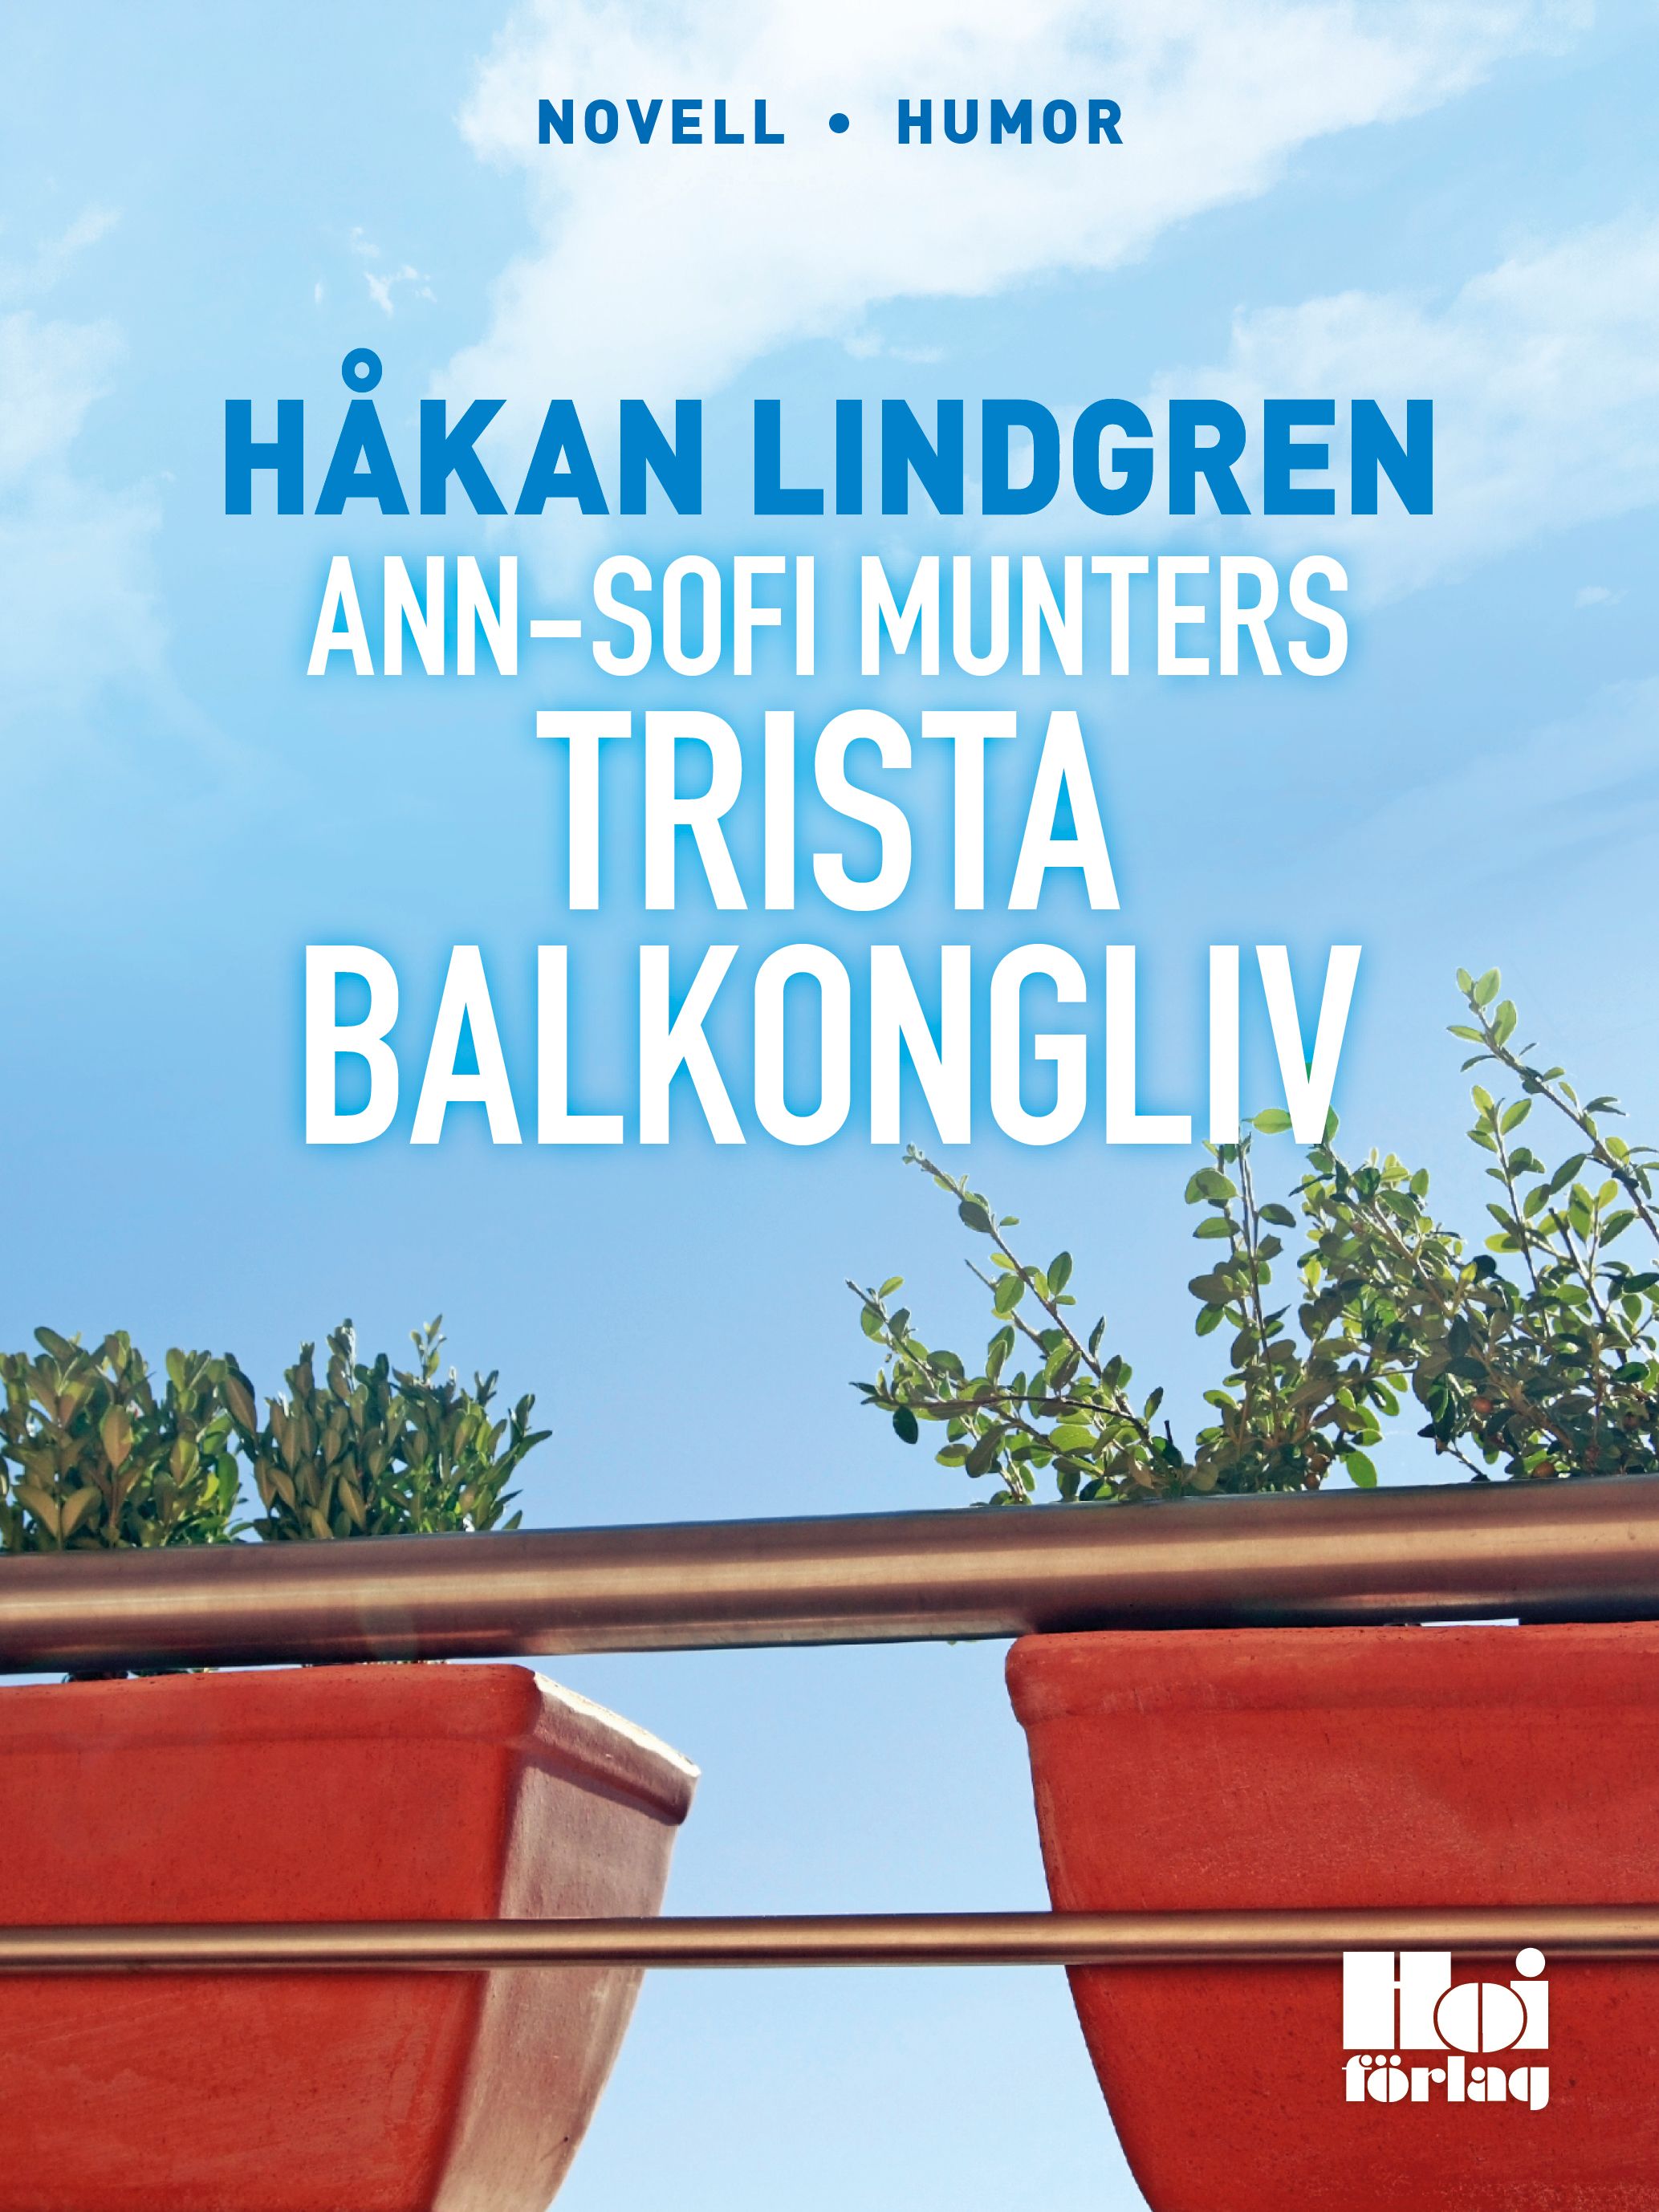 Ann-Sofi Munters trista balkongliv, e-bok av Håkan Lindgren